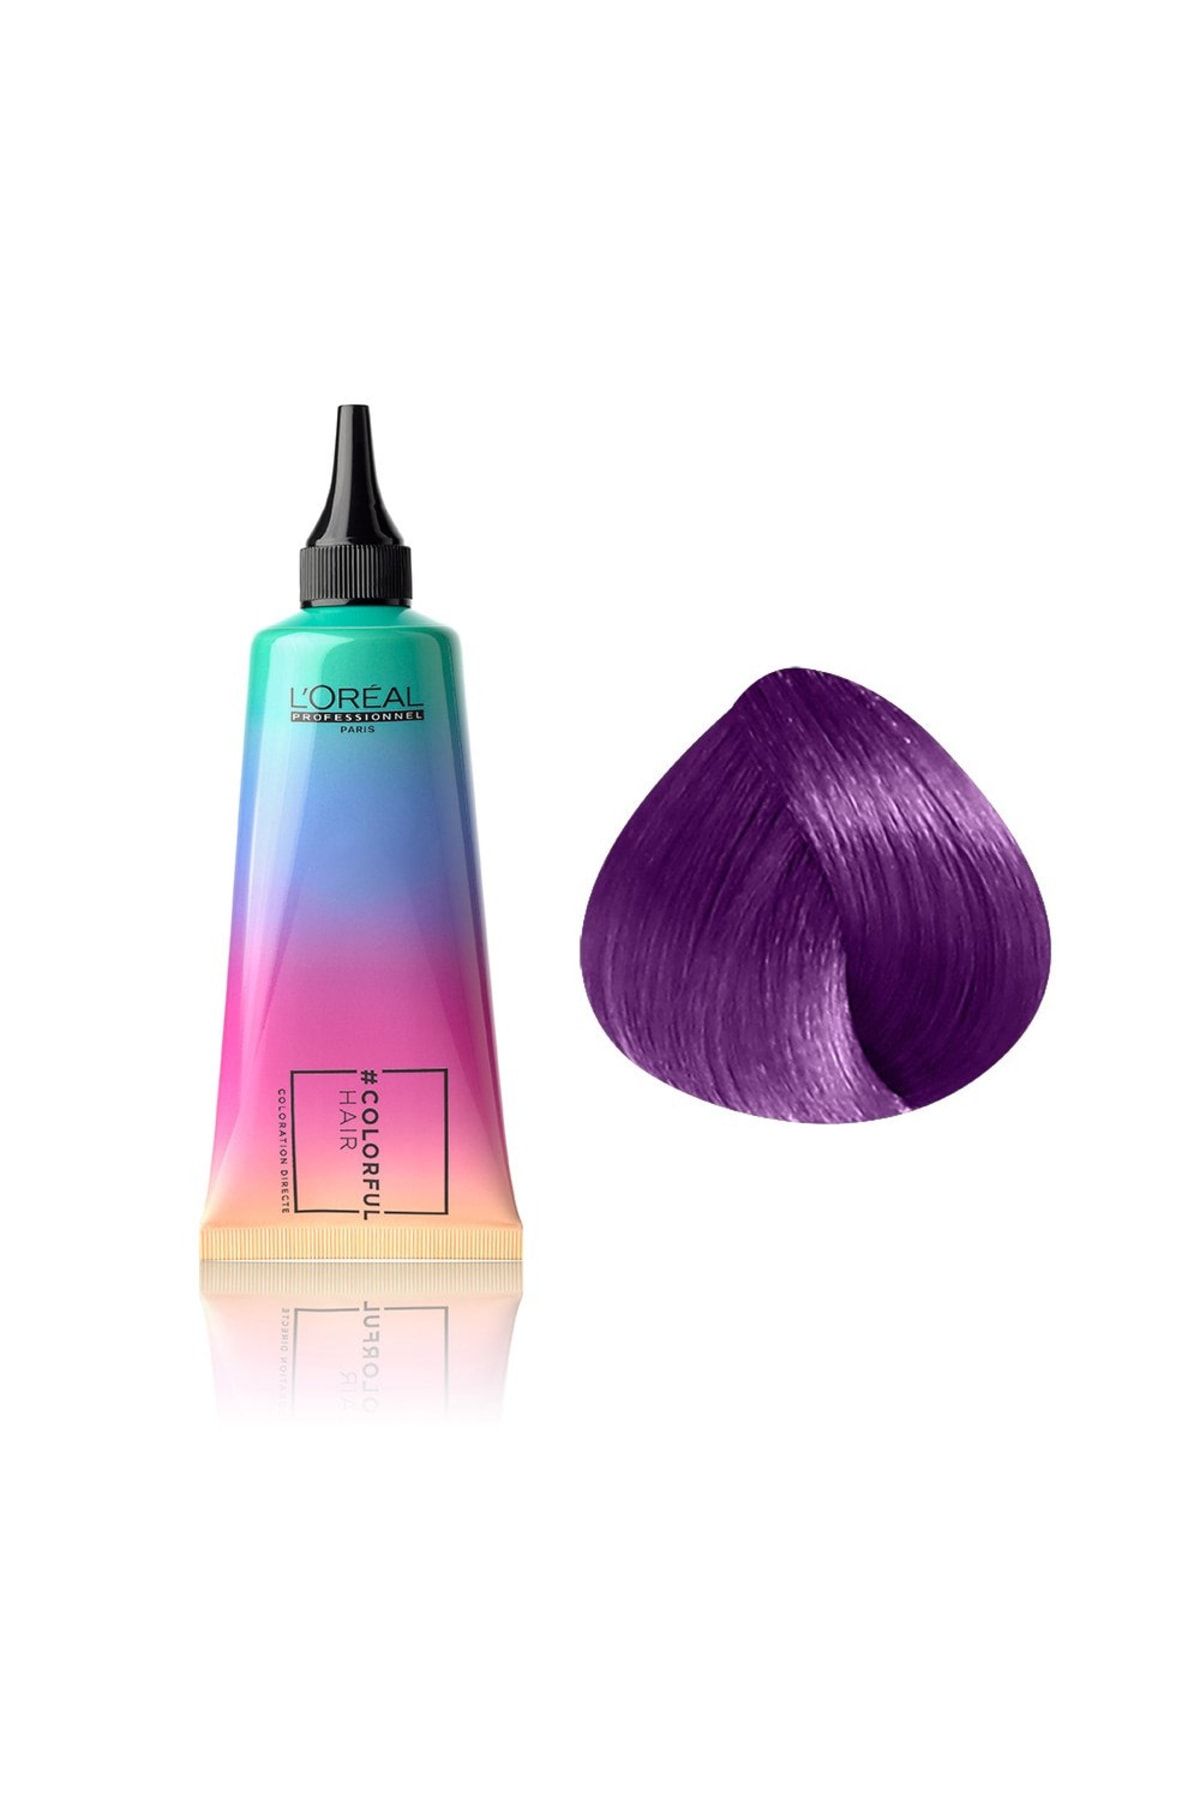 L'oreal Professionnel Colorful Hair Electric Purple Mor Canlı Göz Kamaştırıcı Saç Boyası 90ml